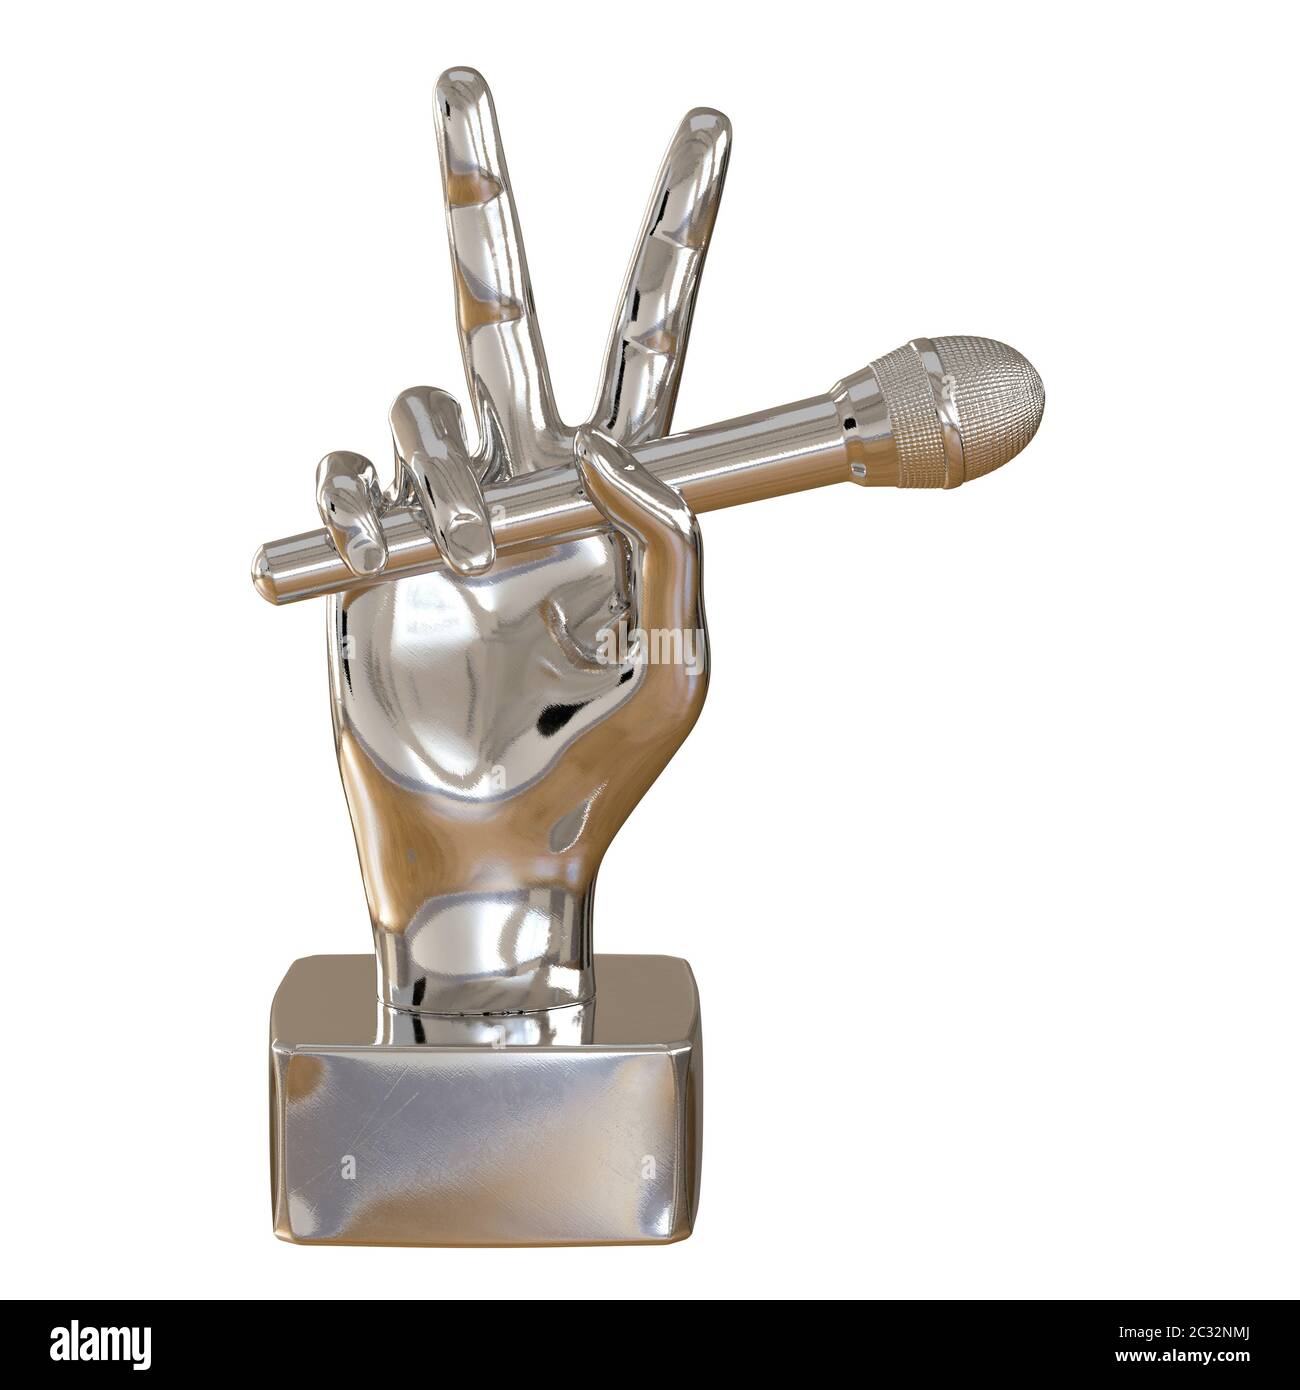 Eine Metallfigur einer Hand mit zwei hochgehobenen Fingern hält ein Mikrofon auf weißem Hintergrund. Vorderansicht. 3d-Rendering Stockfoto